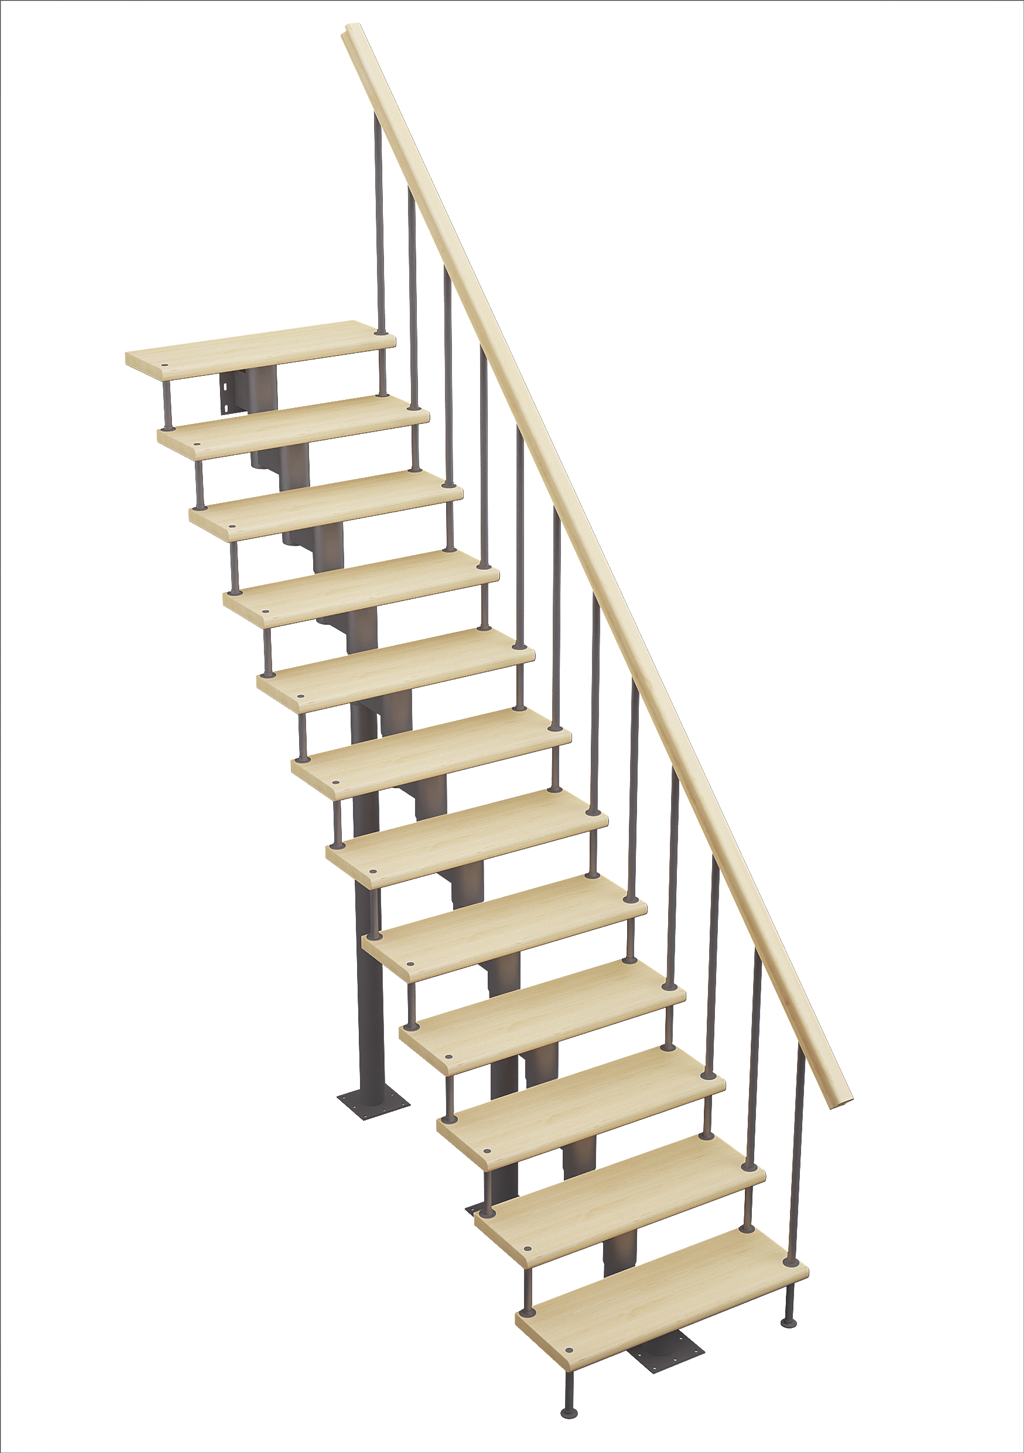 Межэтажные лестницы, срок службы на 35% дольше